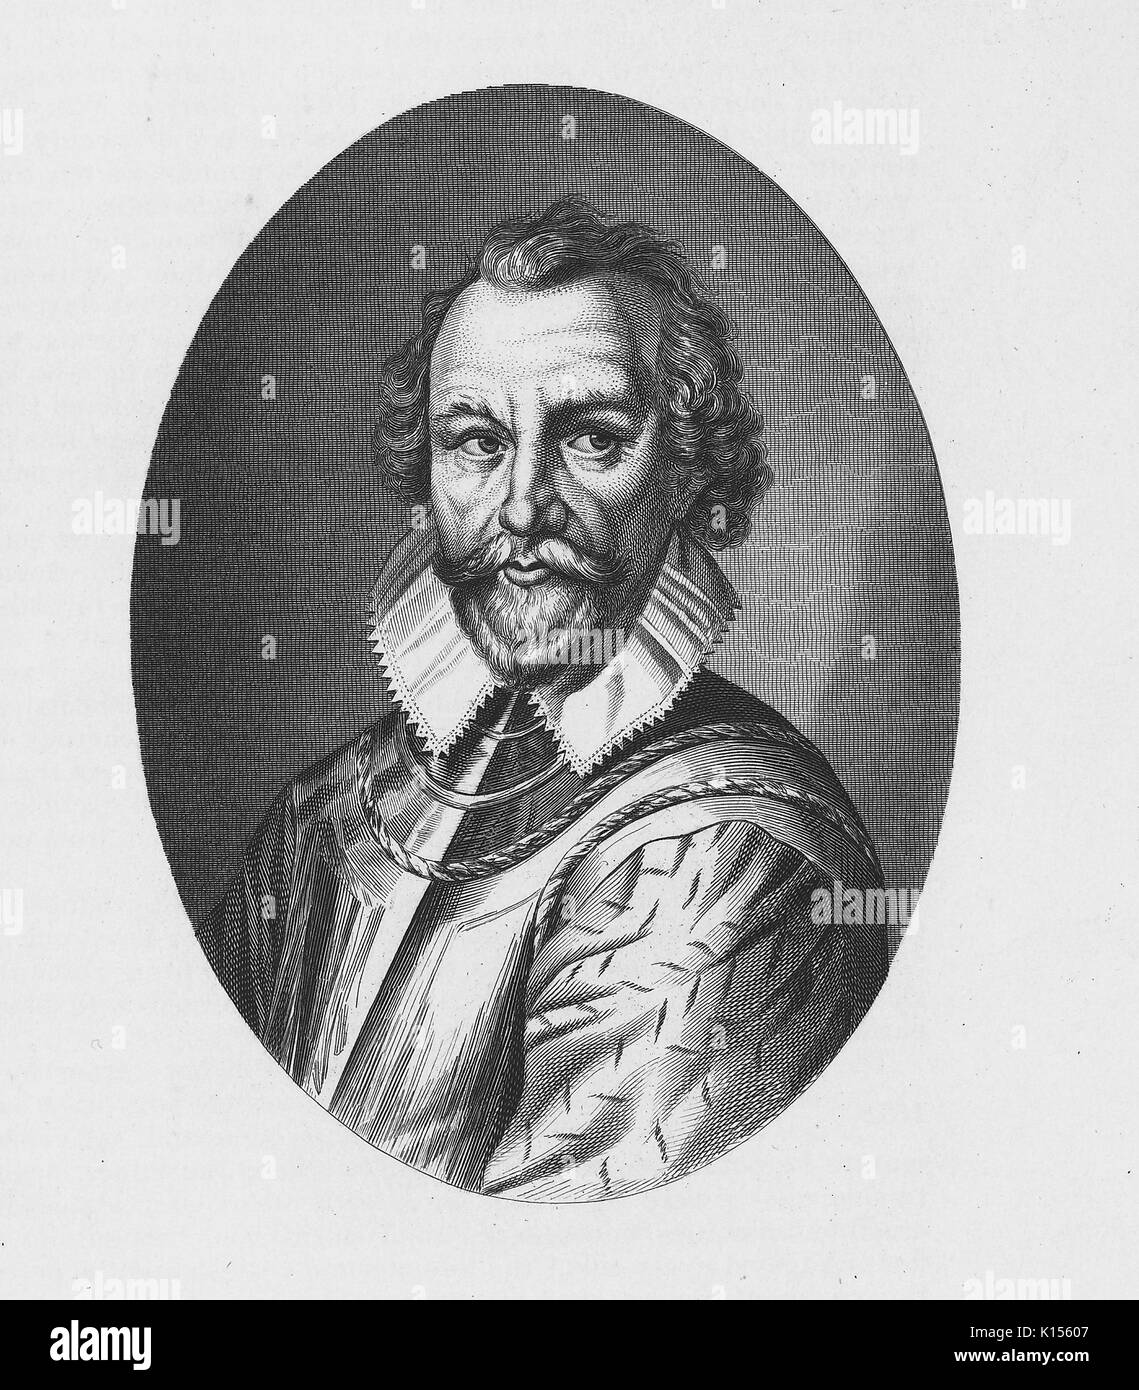 Martin Frobisher, Englisch Explorer und Privateer (Pirat), der Nord-West-Passage, 1550 gesucht. Von der New York Public Library. Stockfoto